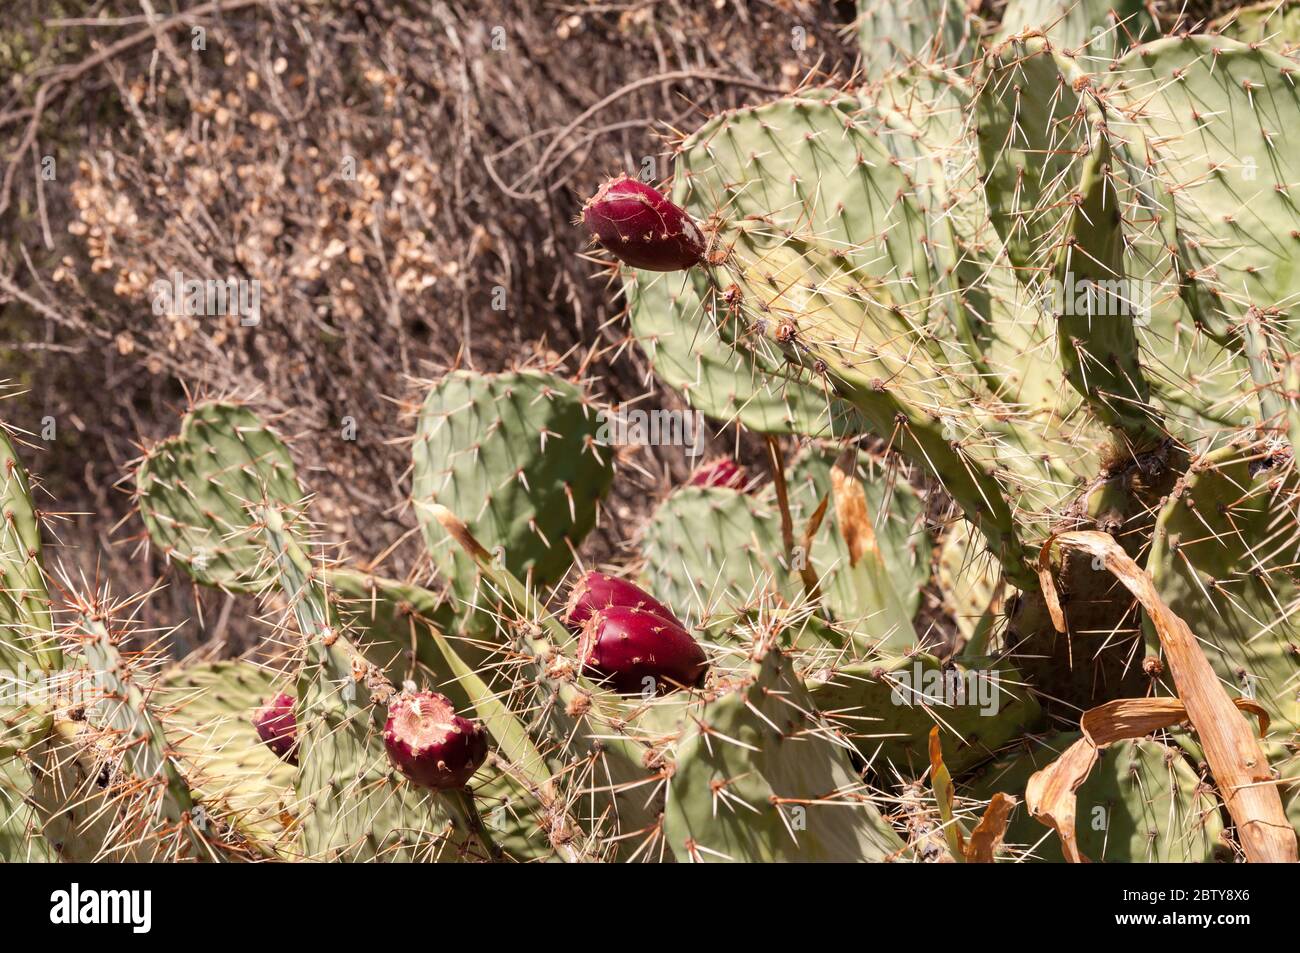 Cactus de poire pickly (Opuntia) avec gros fruits rouges foncé, France Banque D'Images